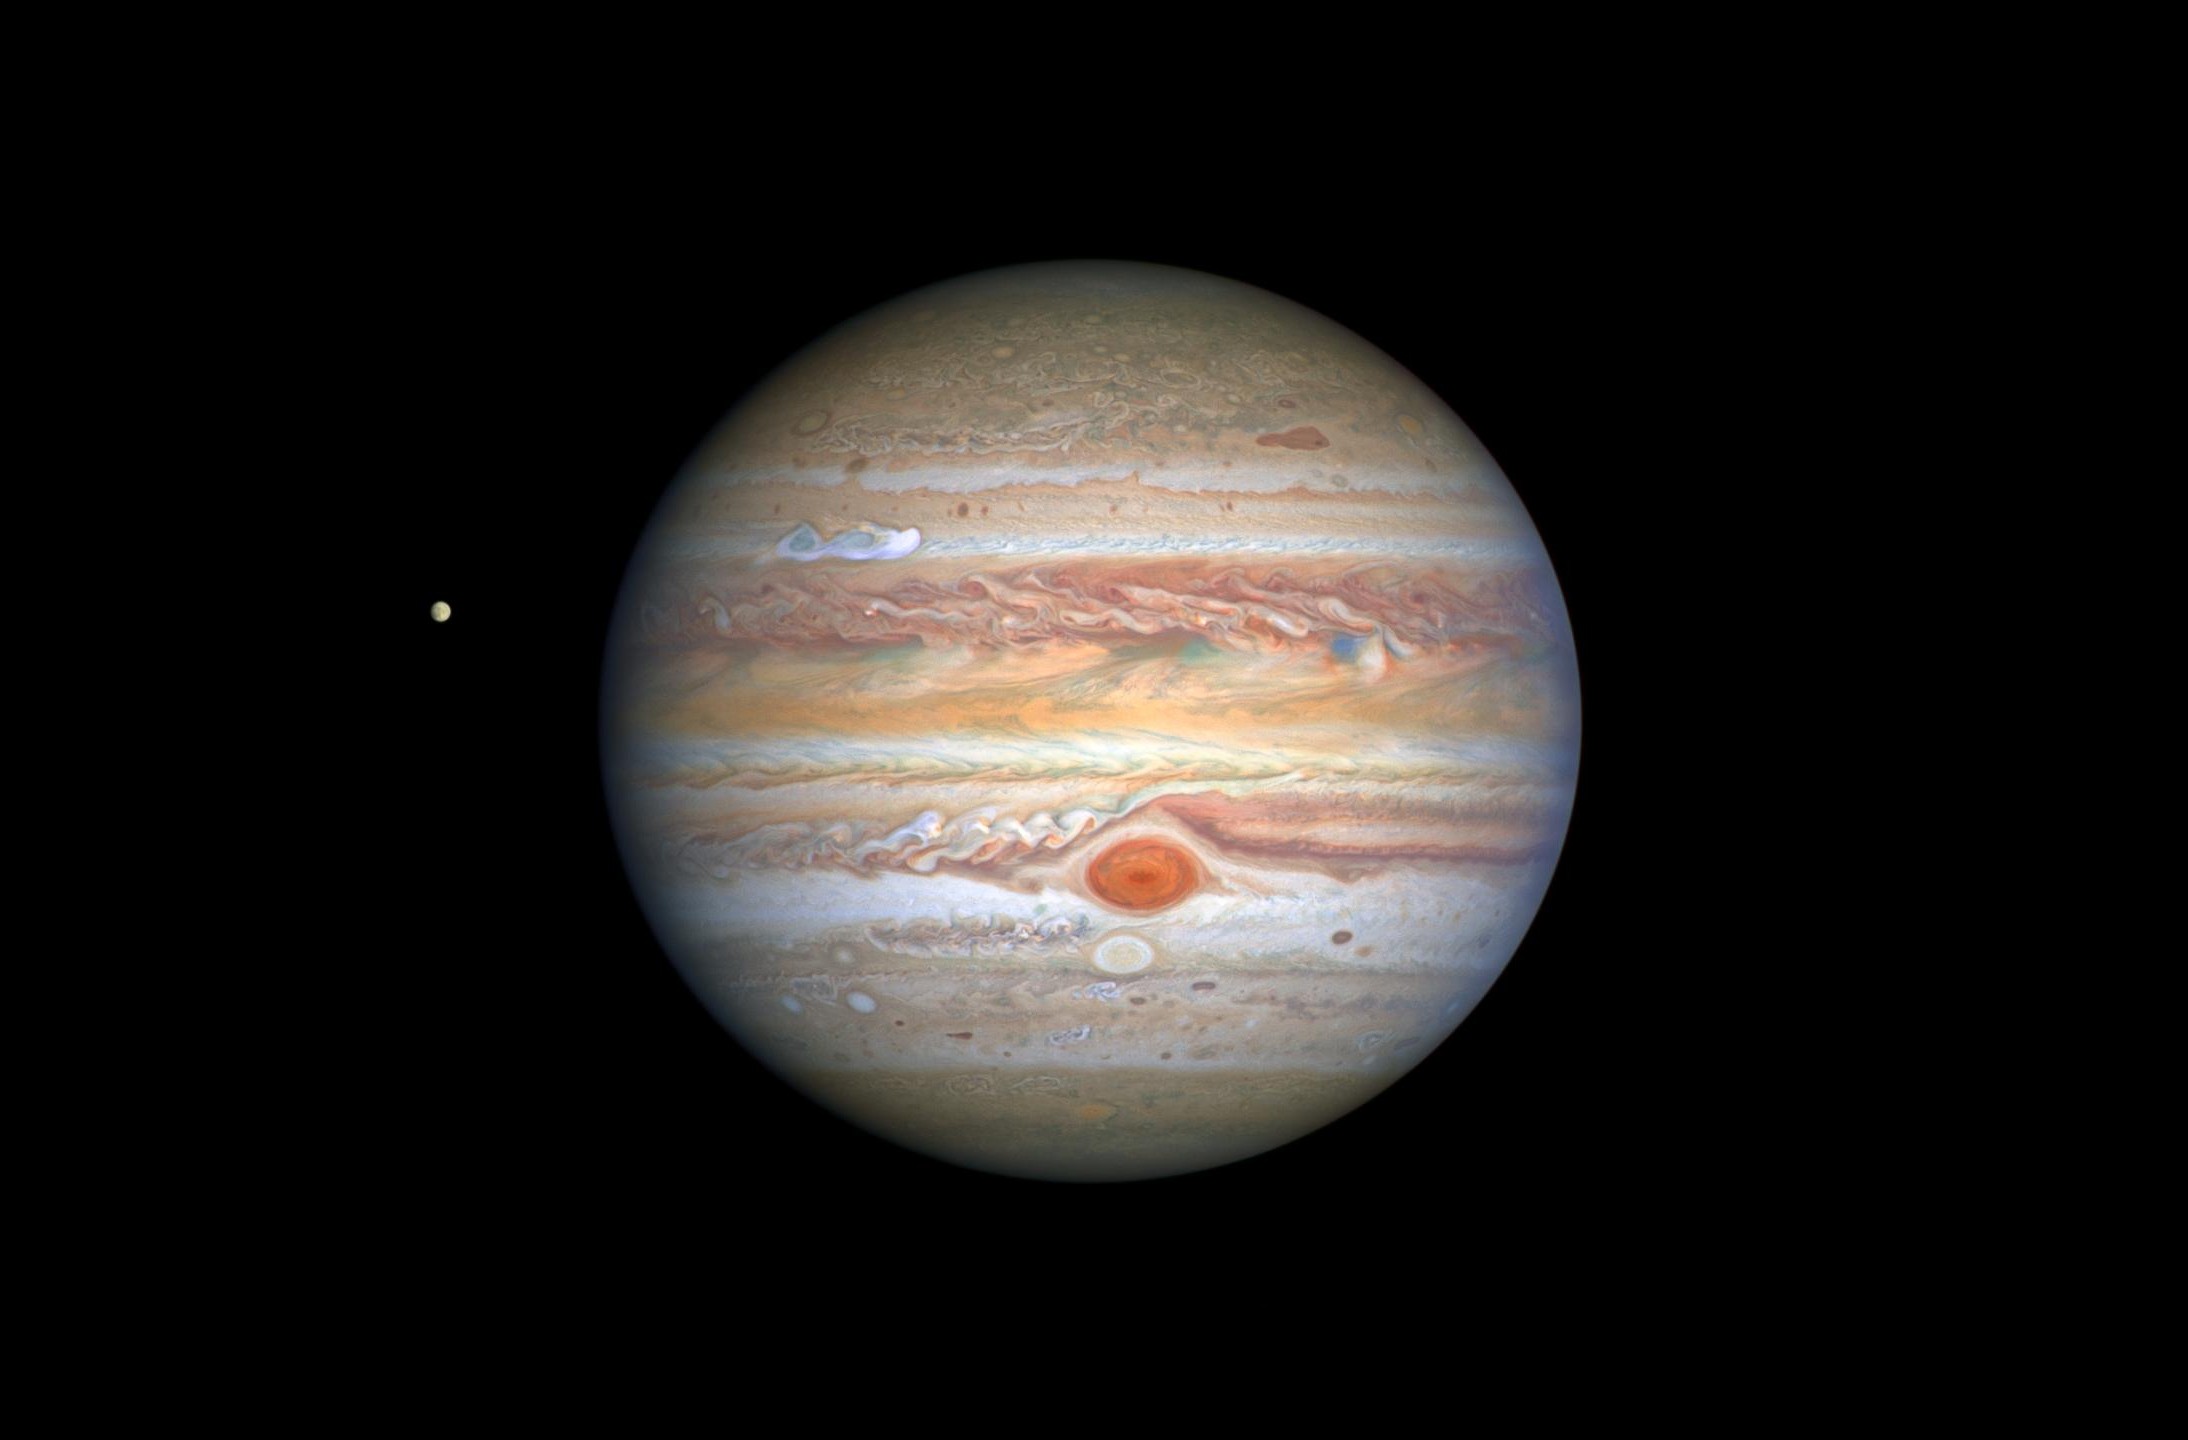 Júpiter e Europa, uma de suas luas, em imagem capturada pelo telescópio espacial Hubble em 25 de agosto de 2020 (Foto: NASA, ESA, STScI, A. Simon (Goddard Space Flight Center), M.H. Wong (University of California, Berkeley), and the OPAL team)